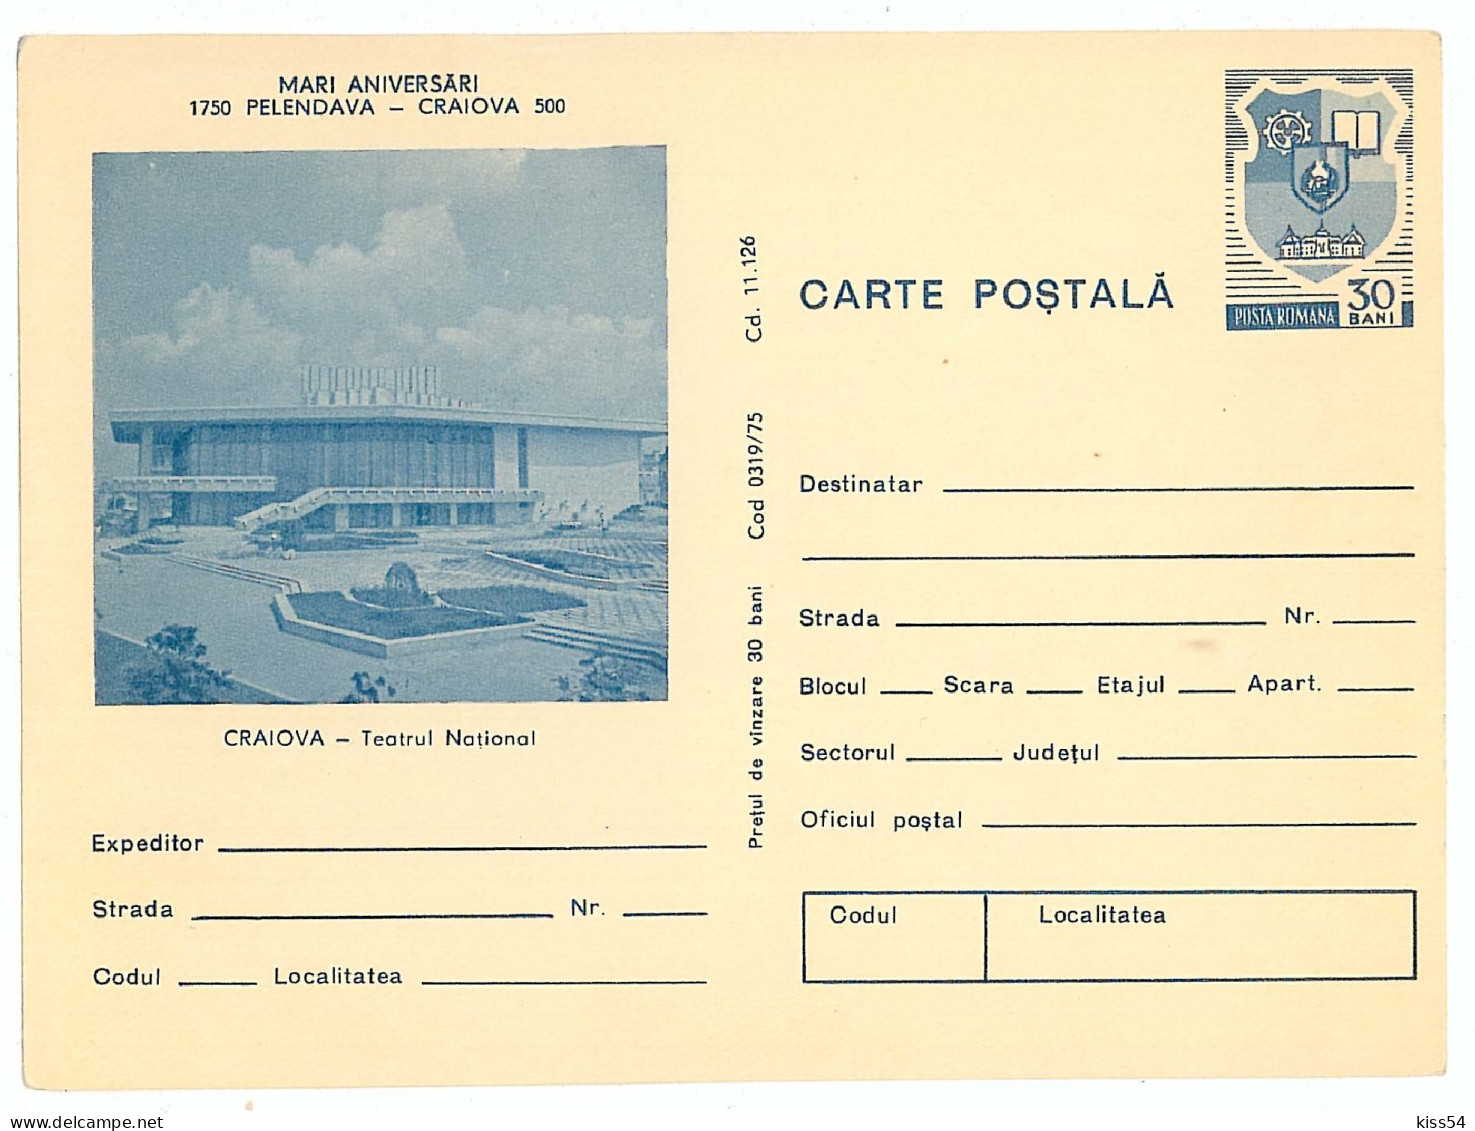 IP 75 - 319 CRAIOVA, Theatre - Stationery - Unused - 1975 - Postal Stationery